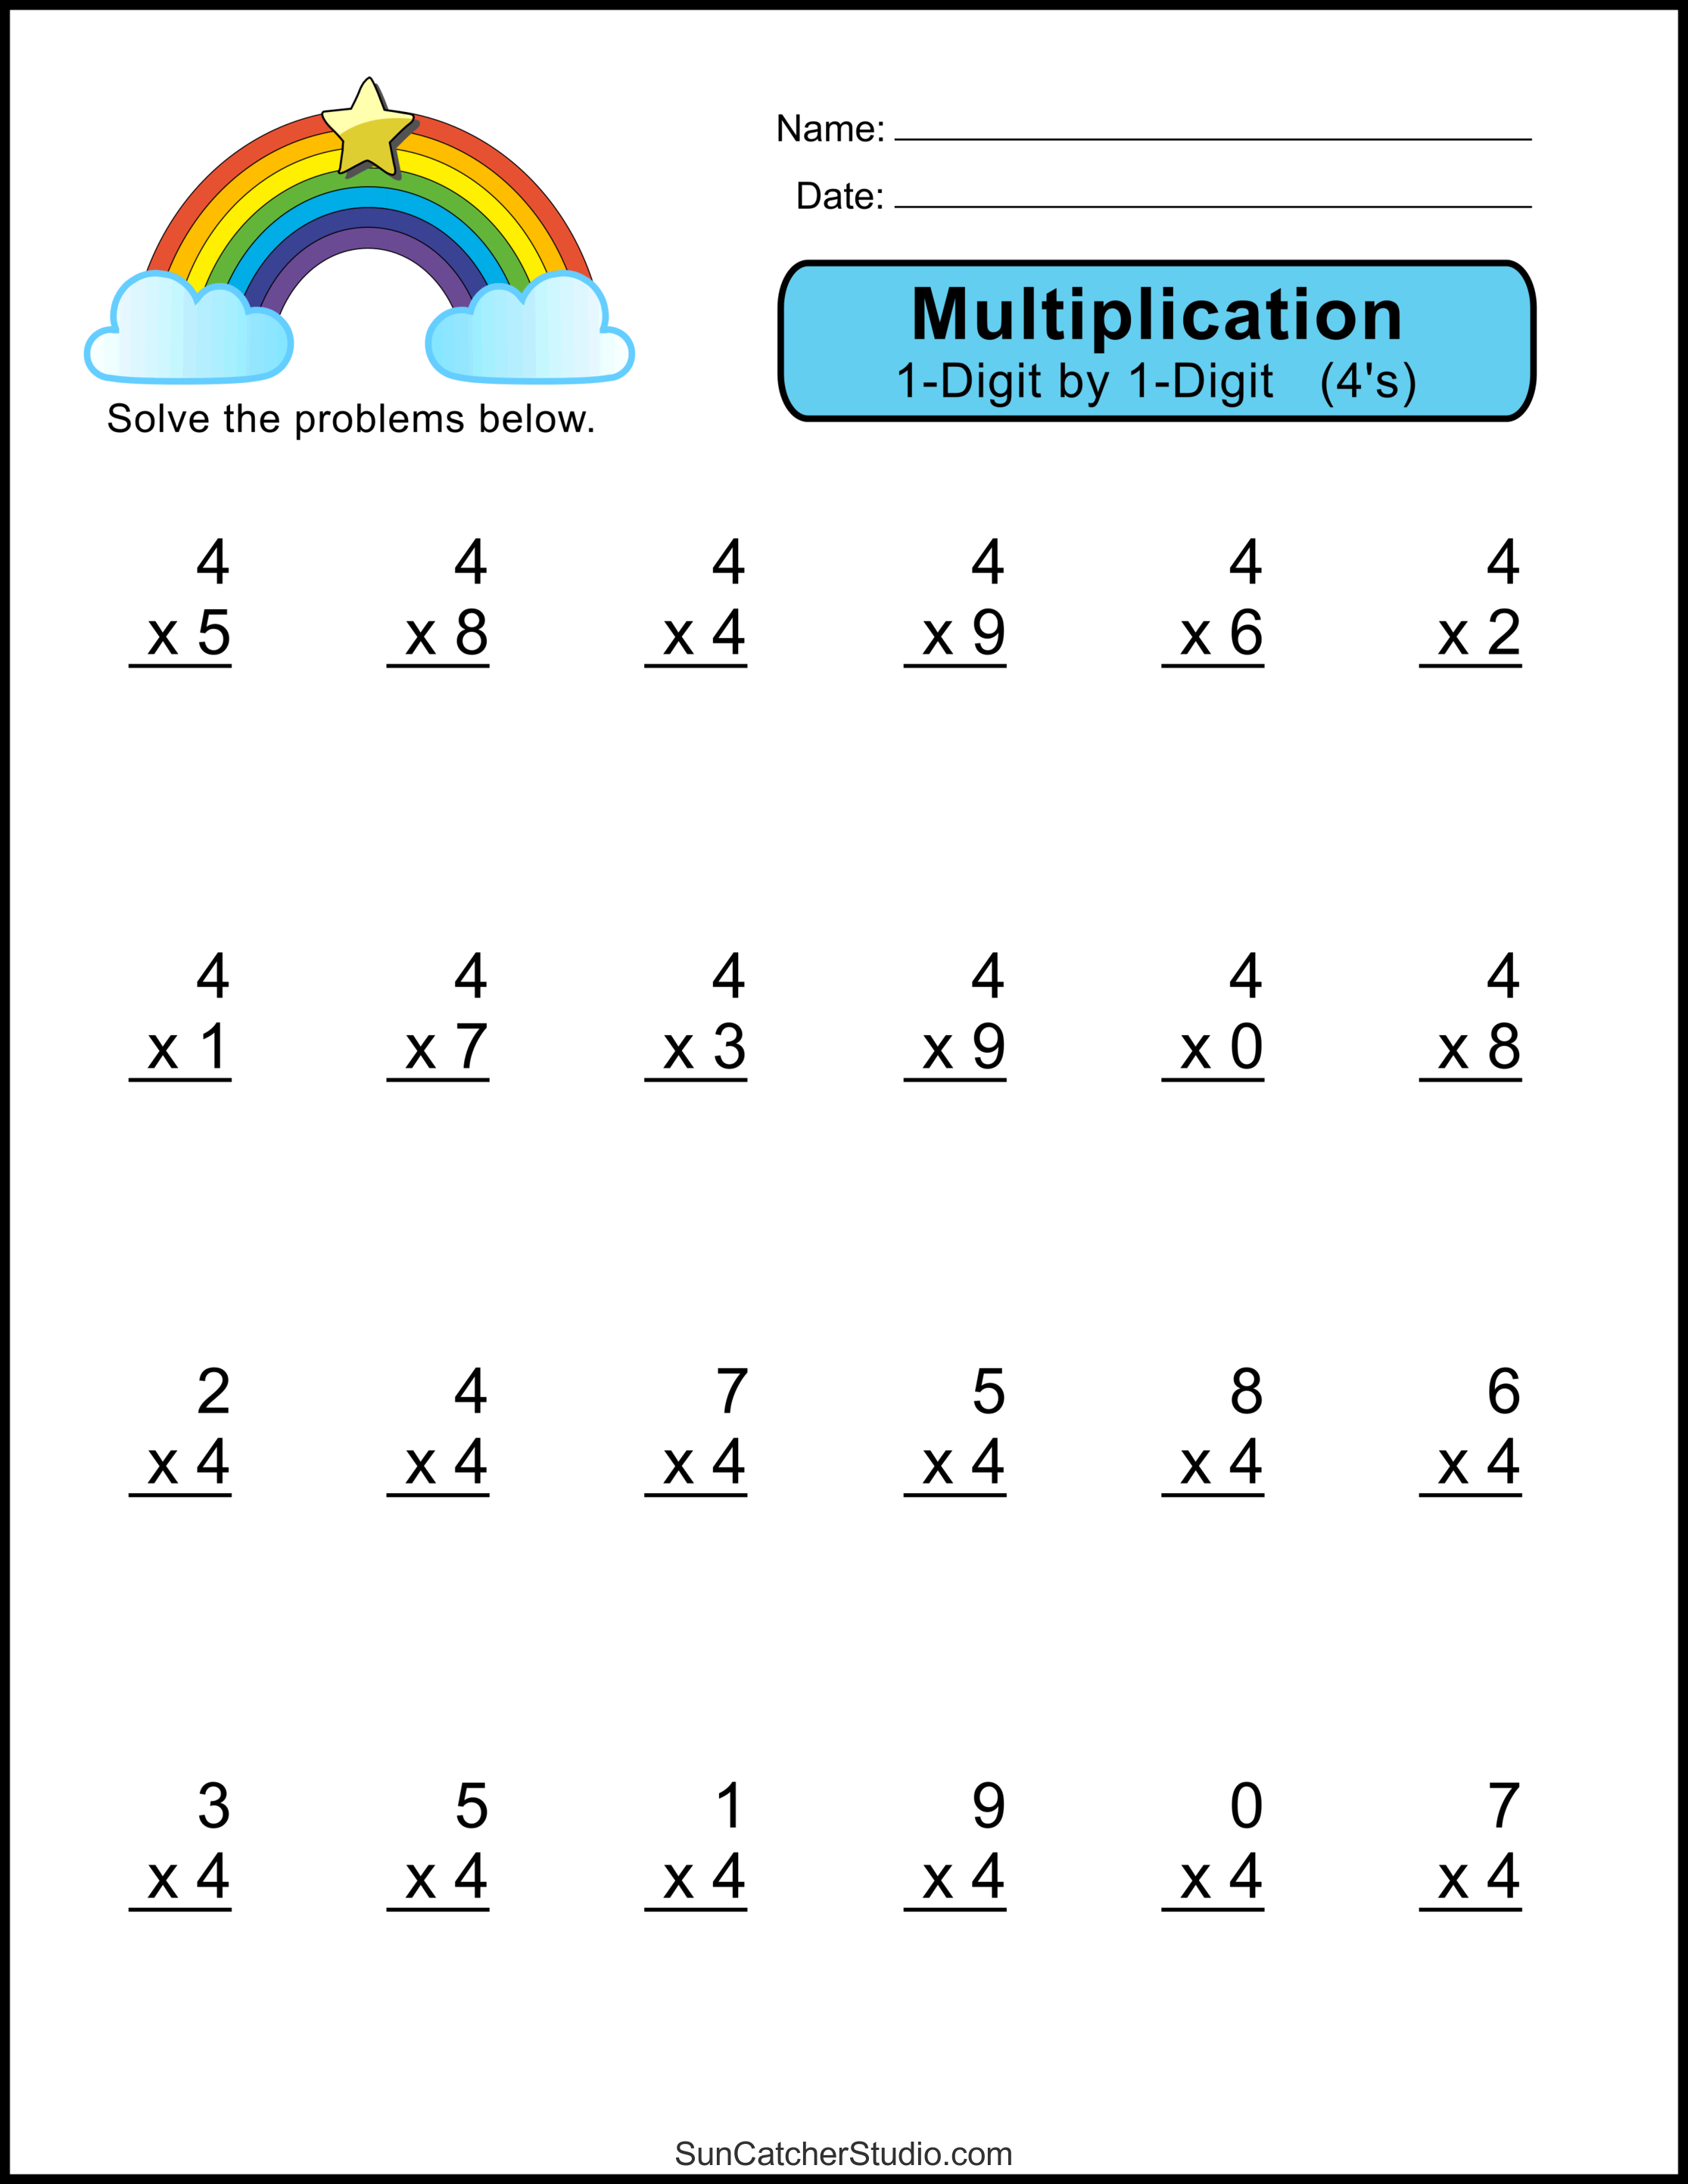 Multiplication Worksheet Free Printable